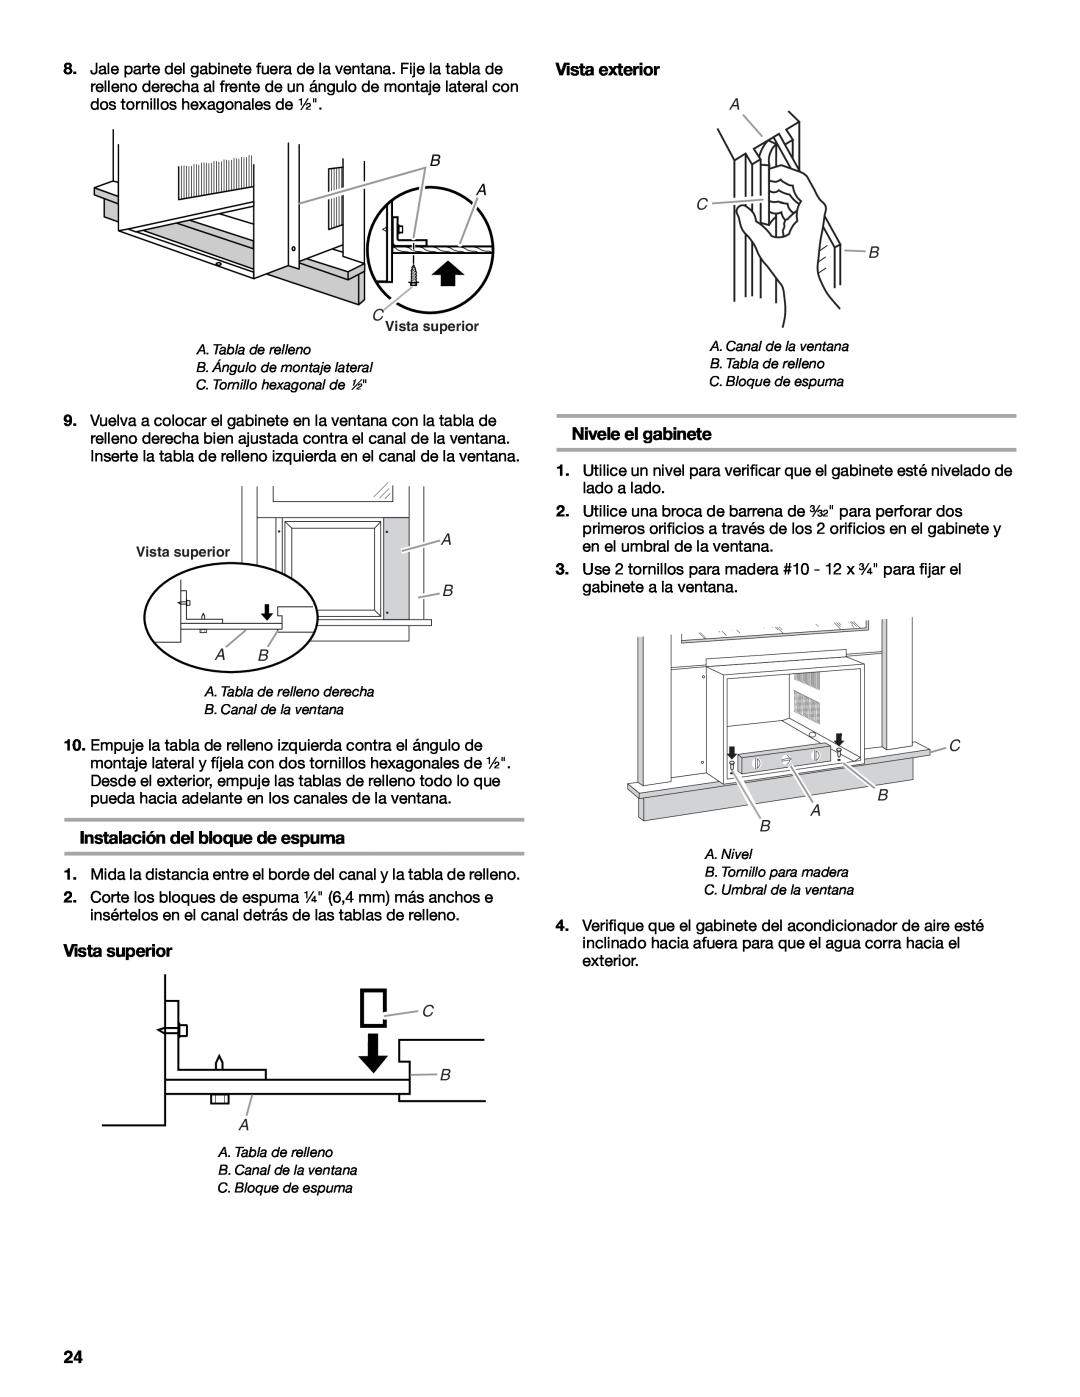 Whirlpool ACE184XR0 manual Instalación del bloque de espuma, Vista superior, Nivele el gabinete, B A C, A C B, B Ab, C B A 